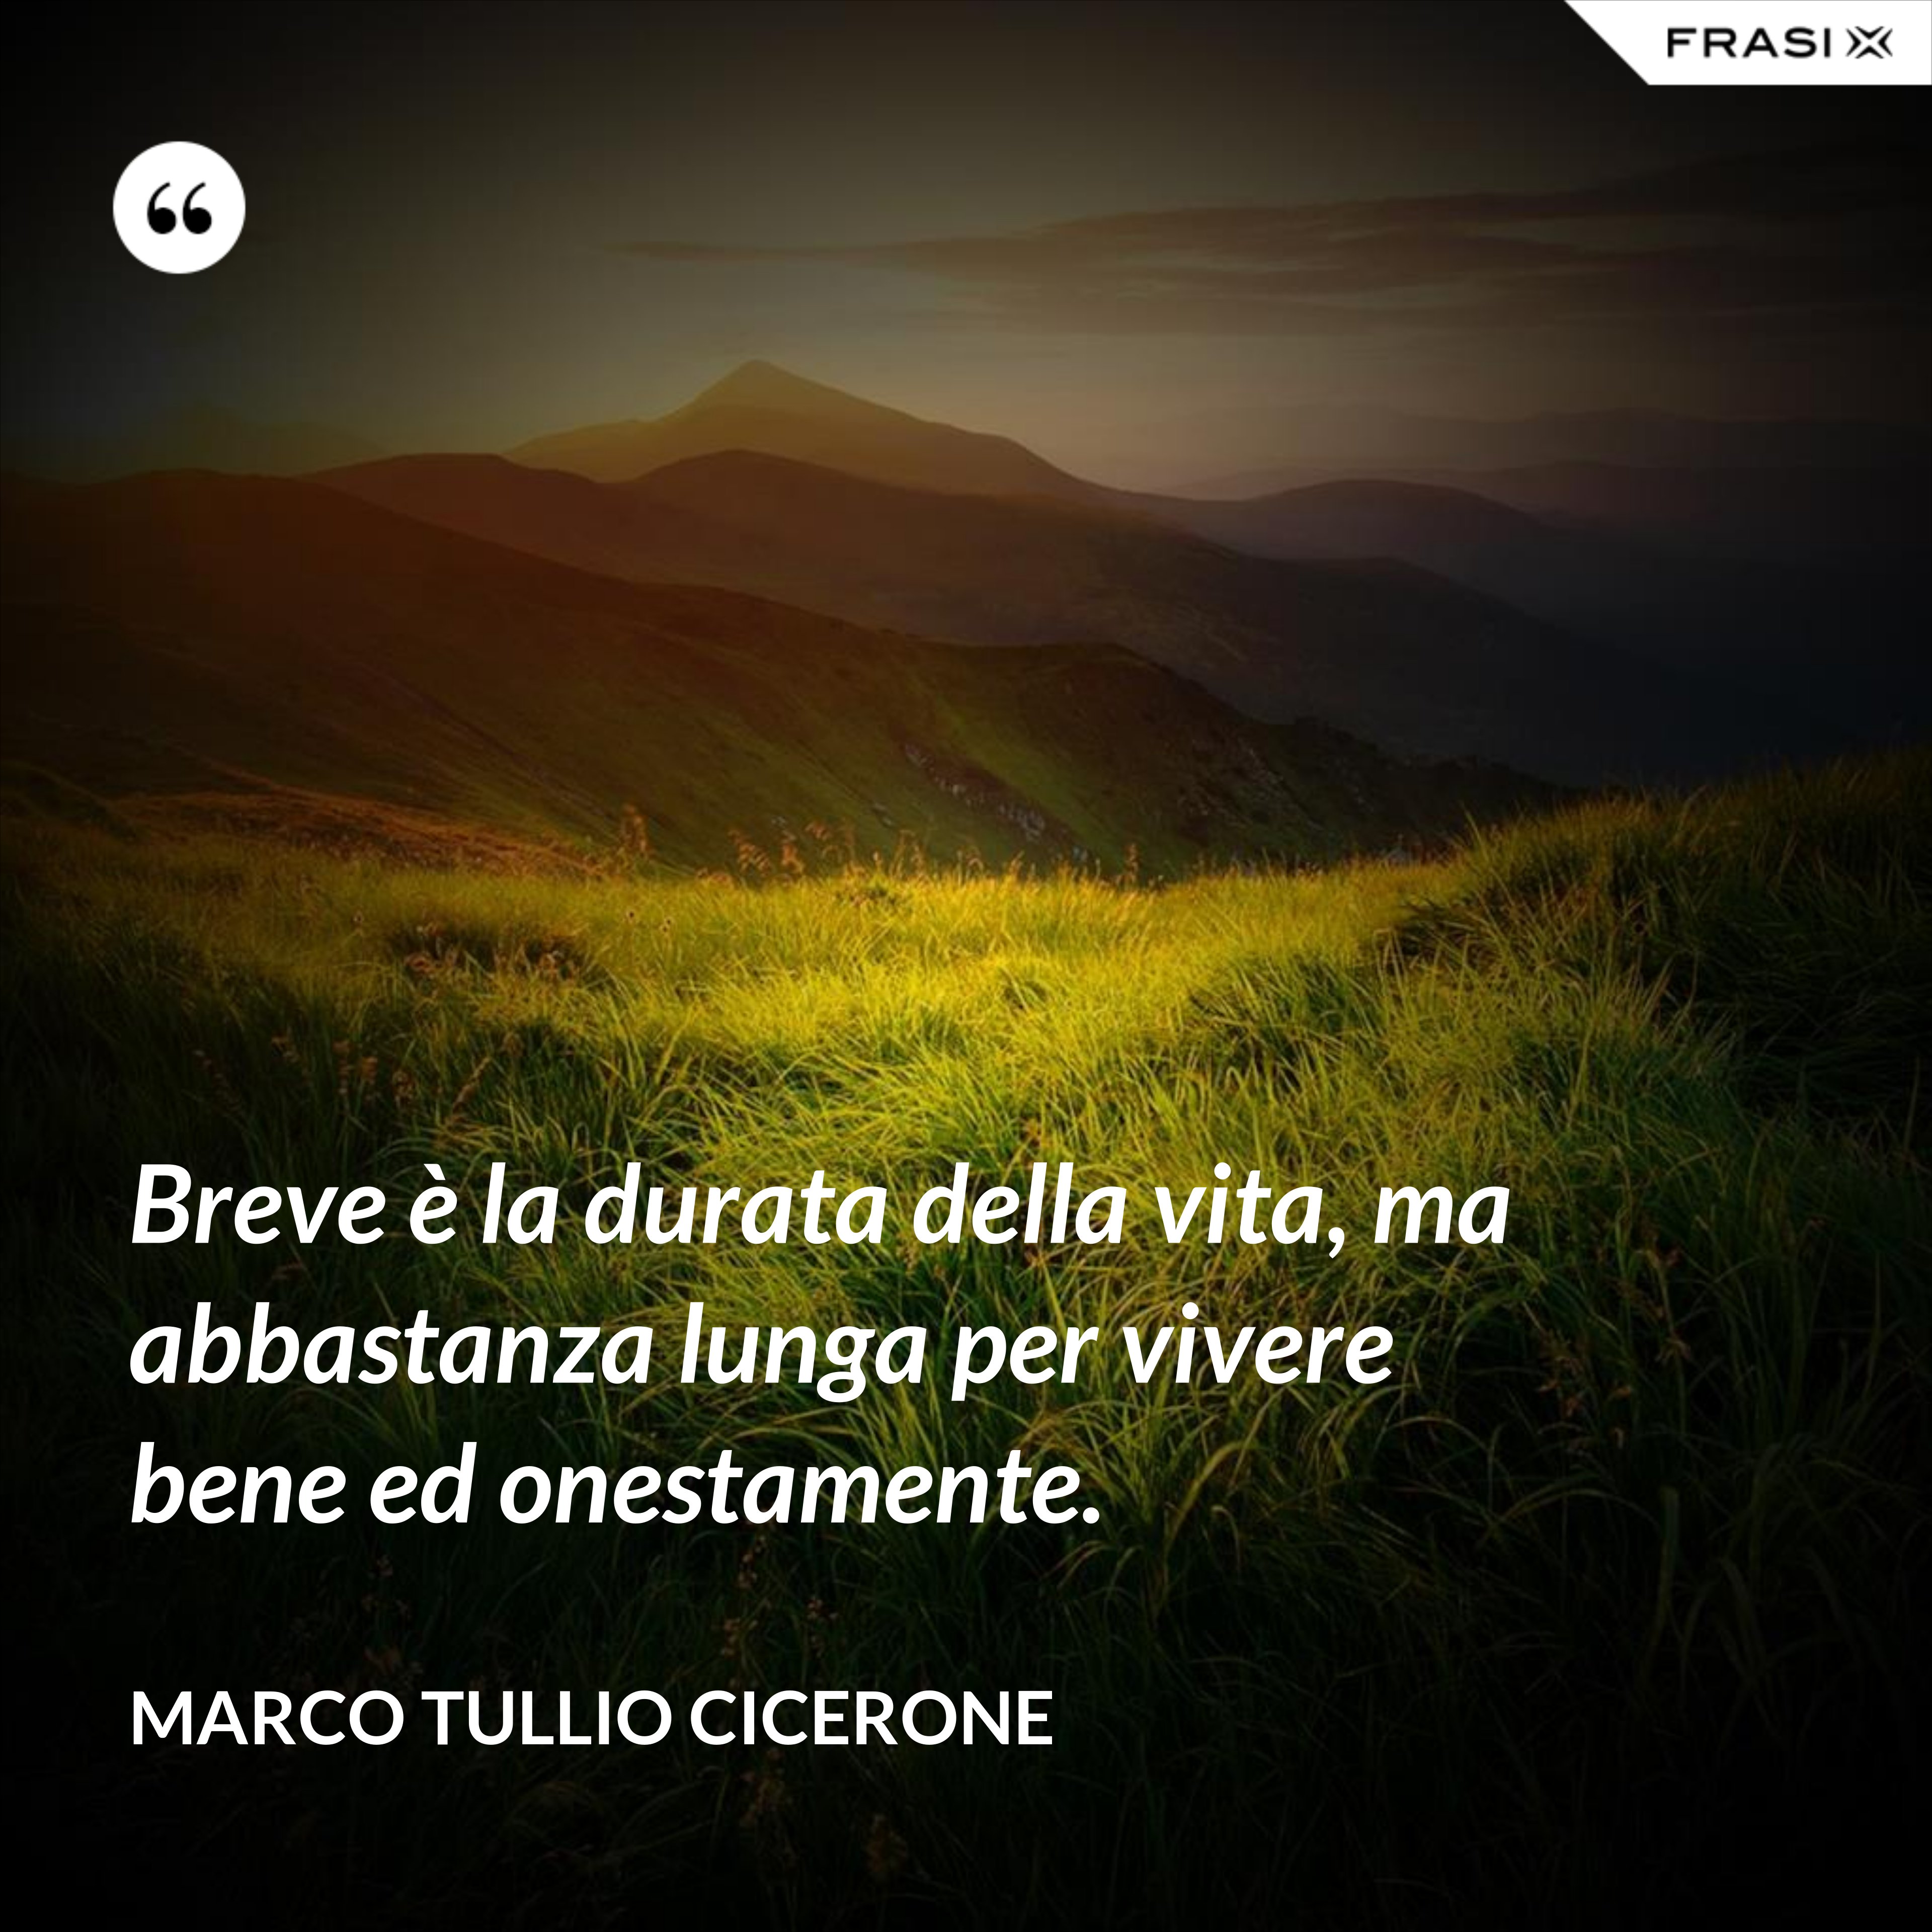 Breve è la durata della vita, ma abbastanza lunga per vivere bene ed onestamente. - Marco Tullio Cicerone